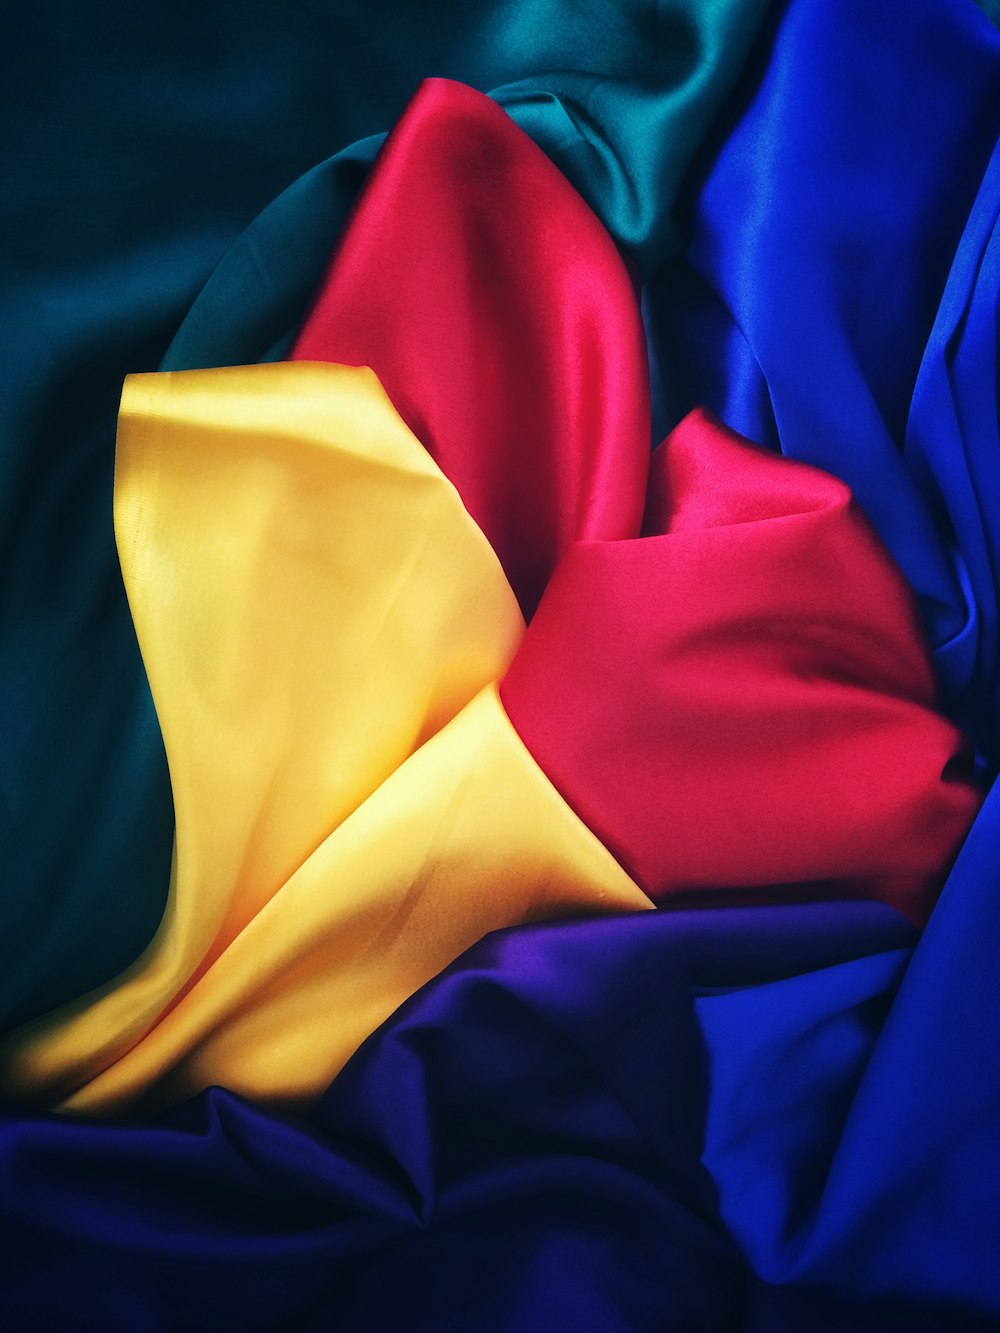 빨강, 노랑, 파랑 및 녹색 실크 천의 사진